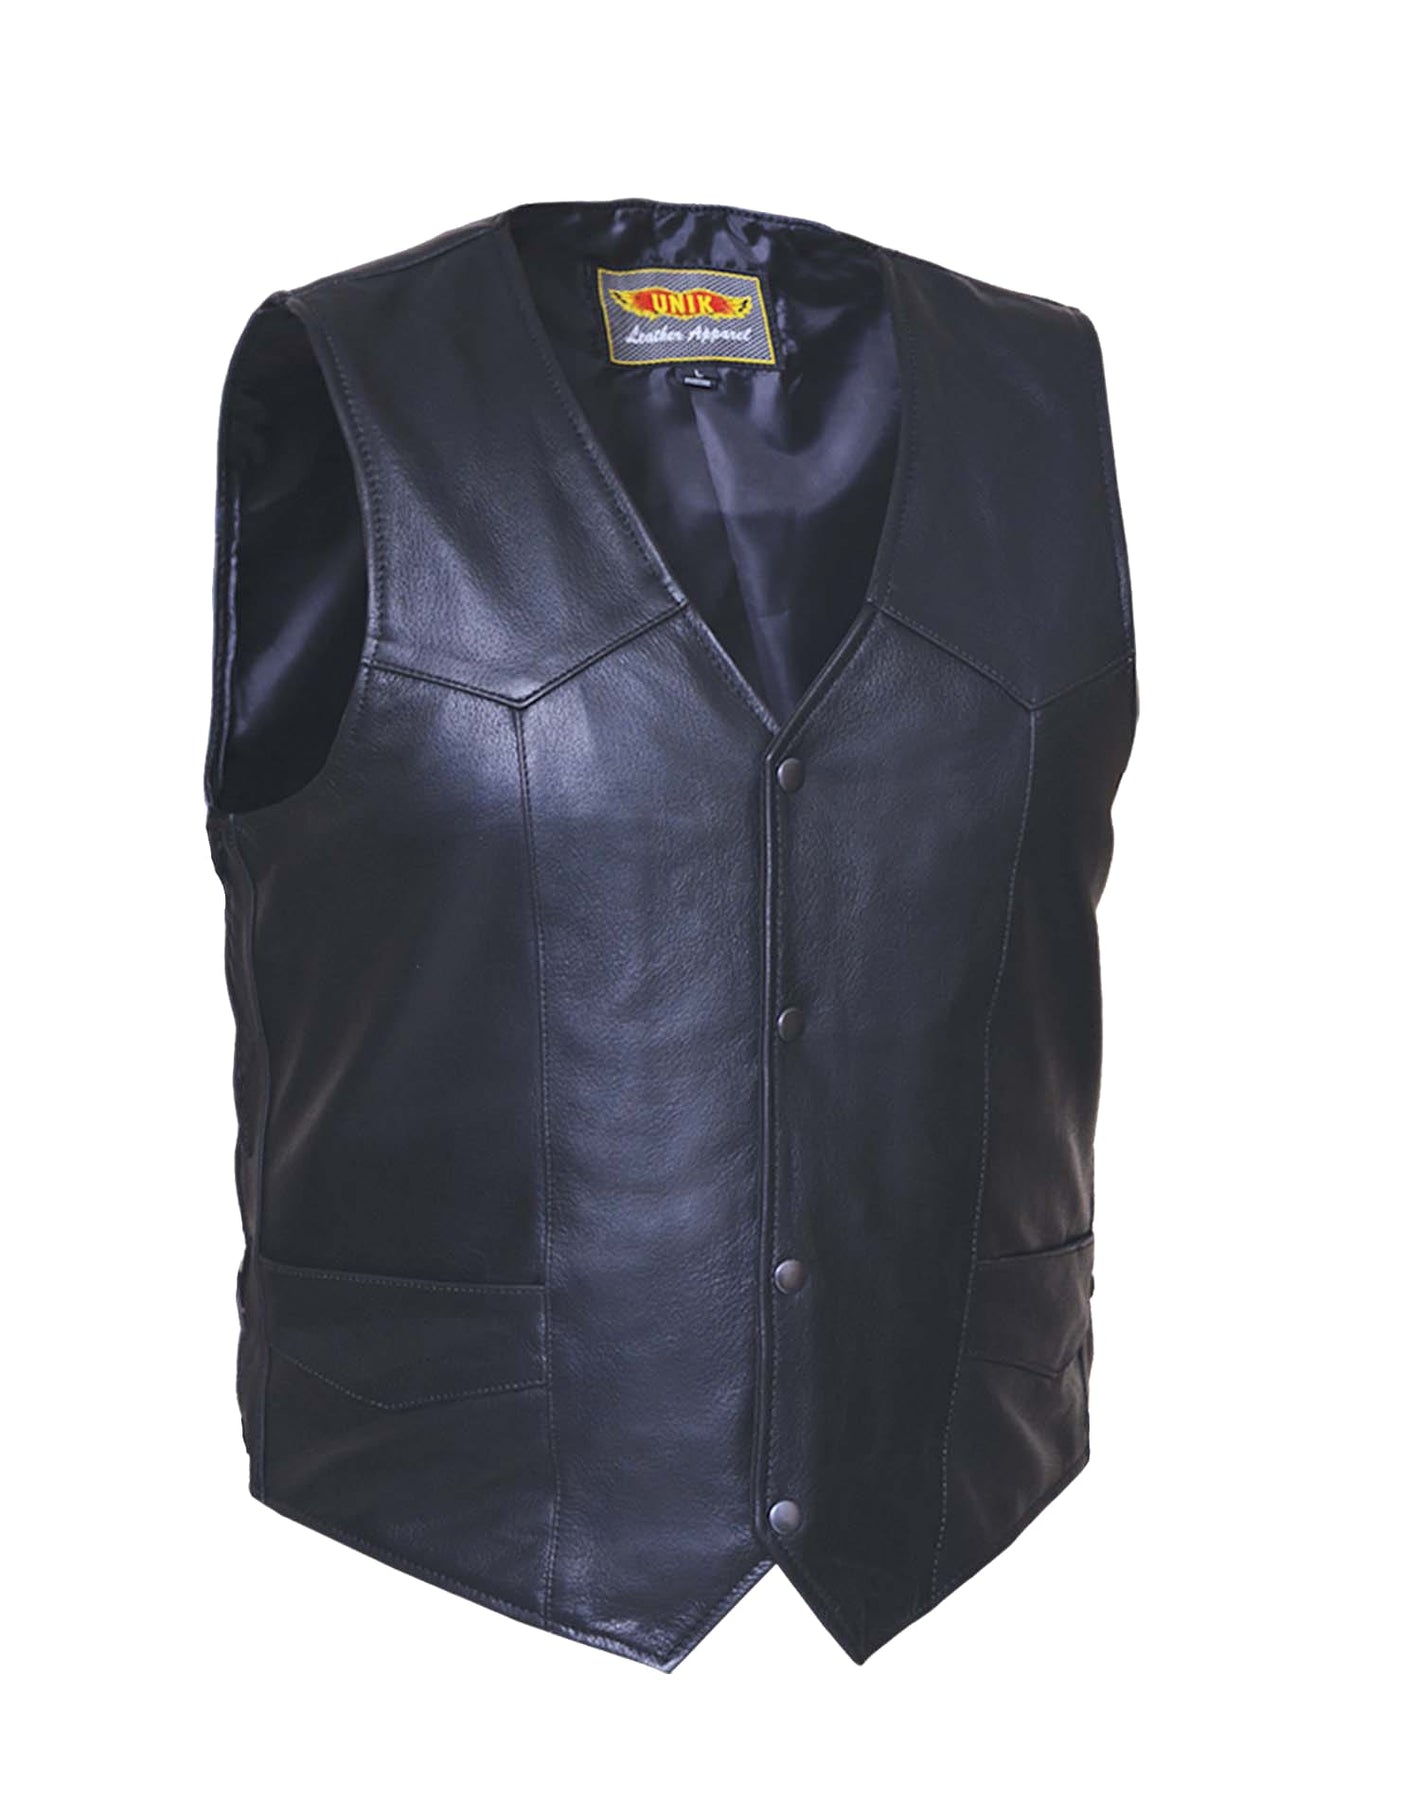 Men's Premium Leather Plain side Motorcycle Vest